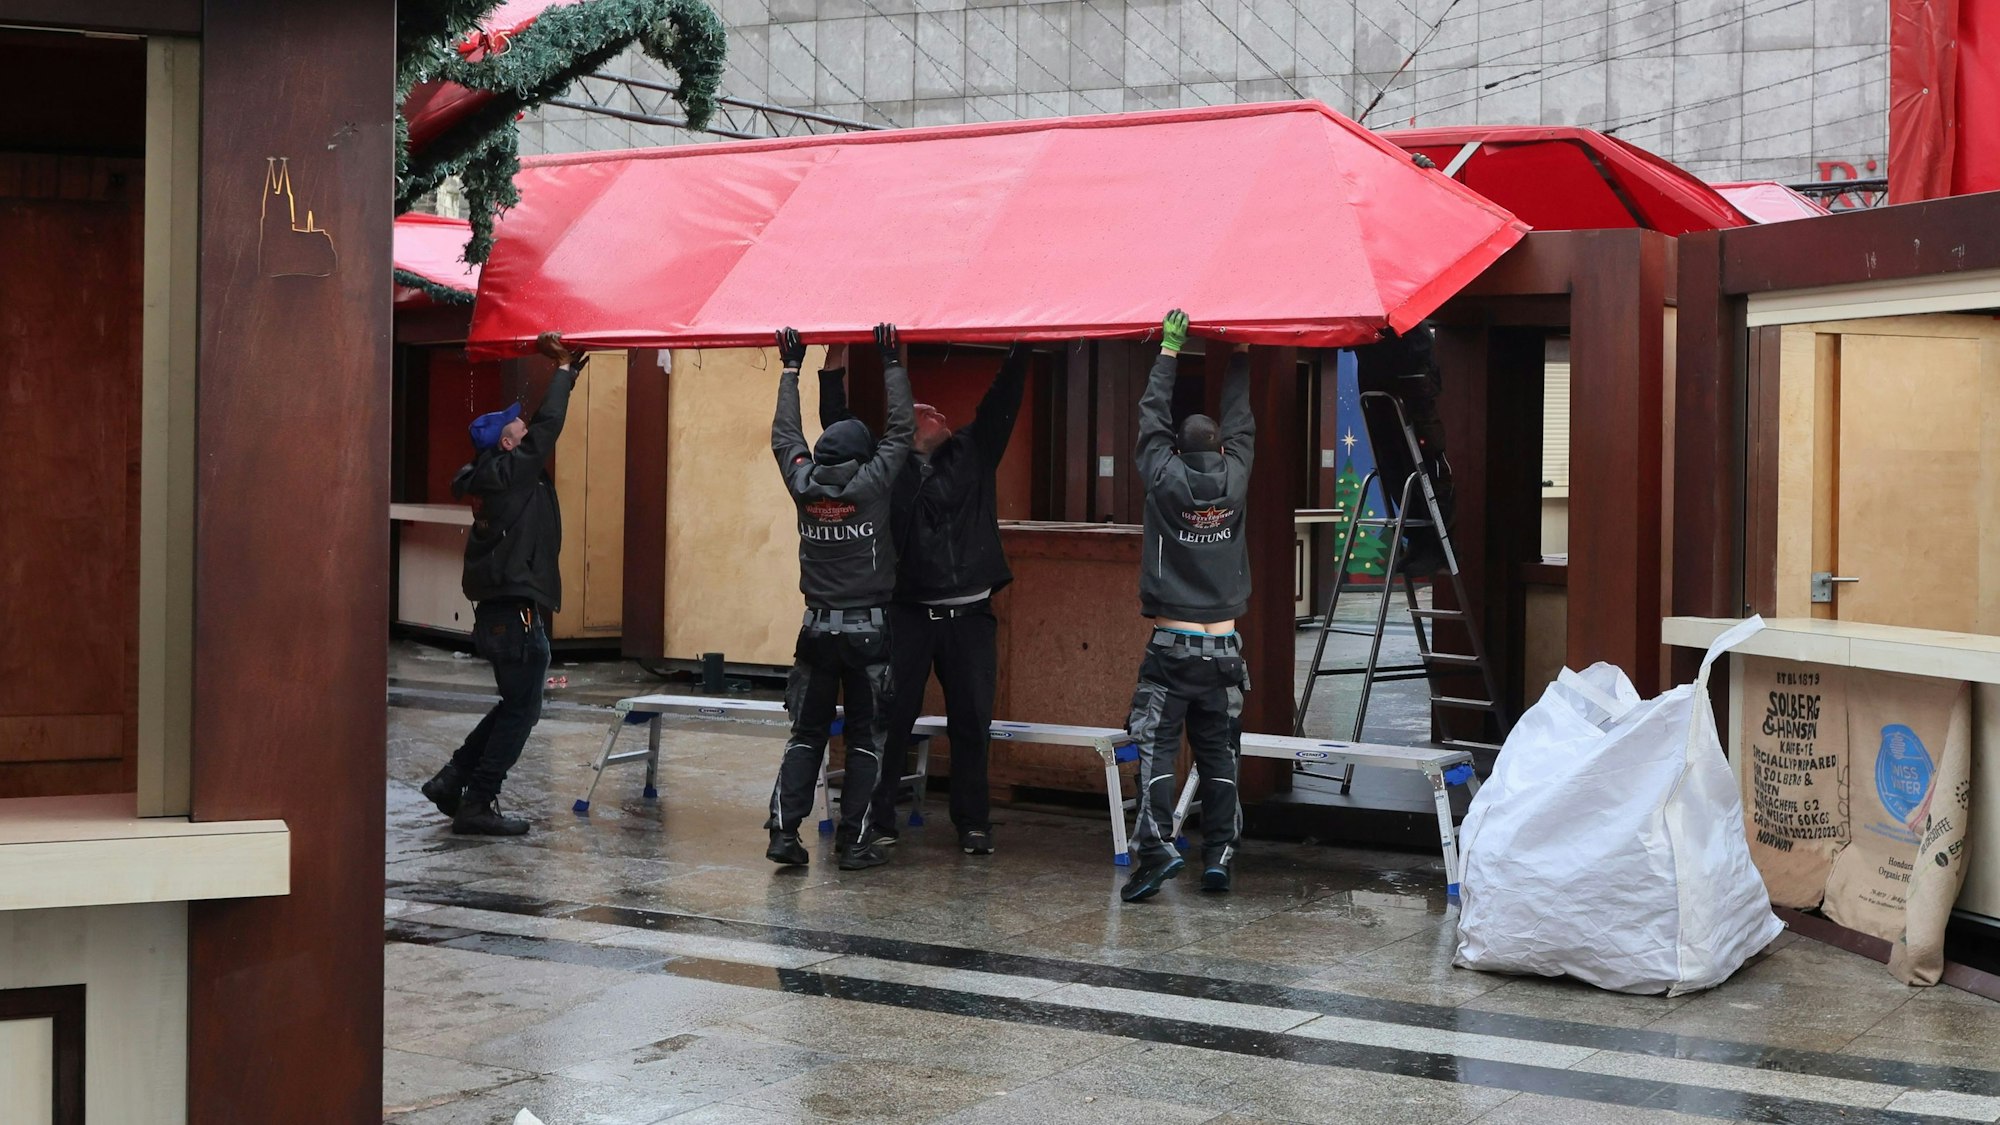 Mehrere Männer arbeite zusammen, um eine Hütte des Weihnachtsmarkts am Kölner Dom zu demontieren.

